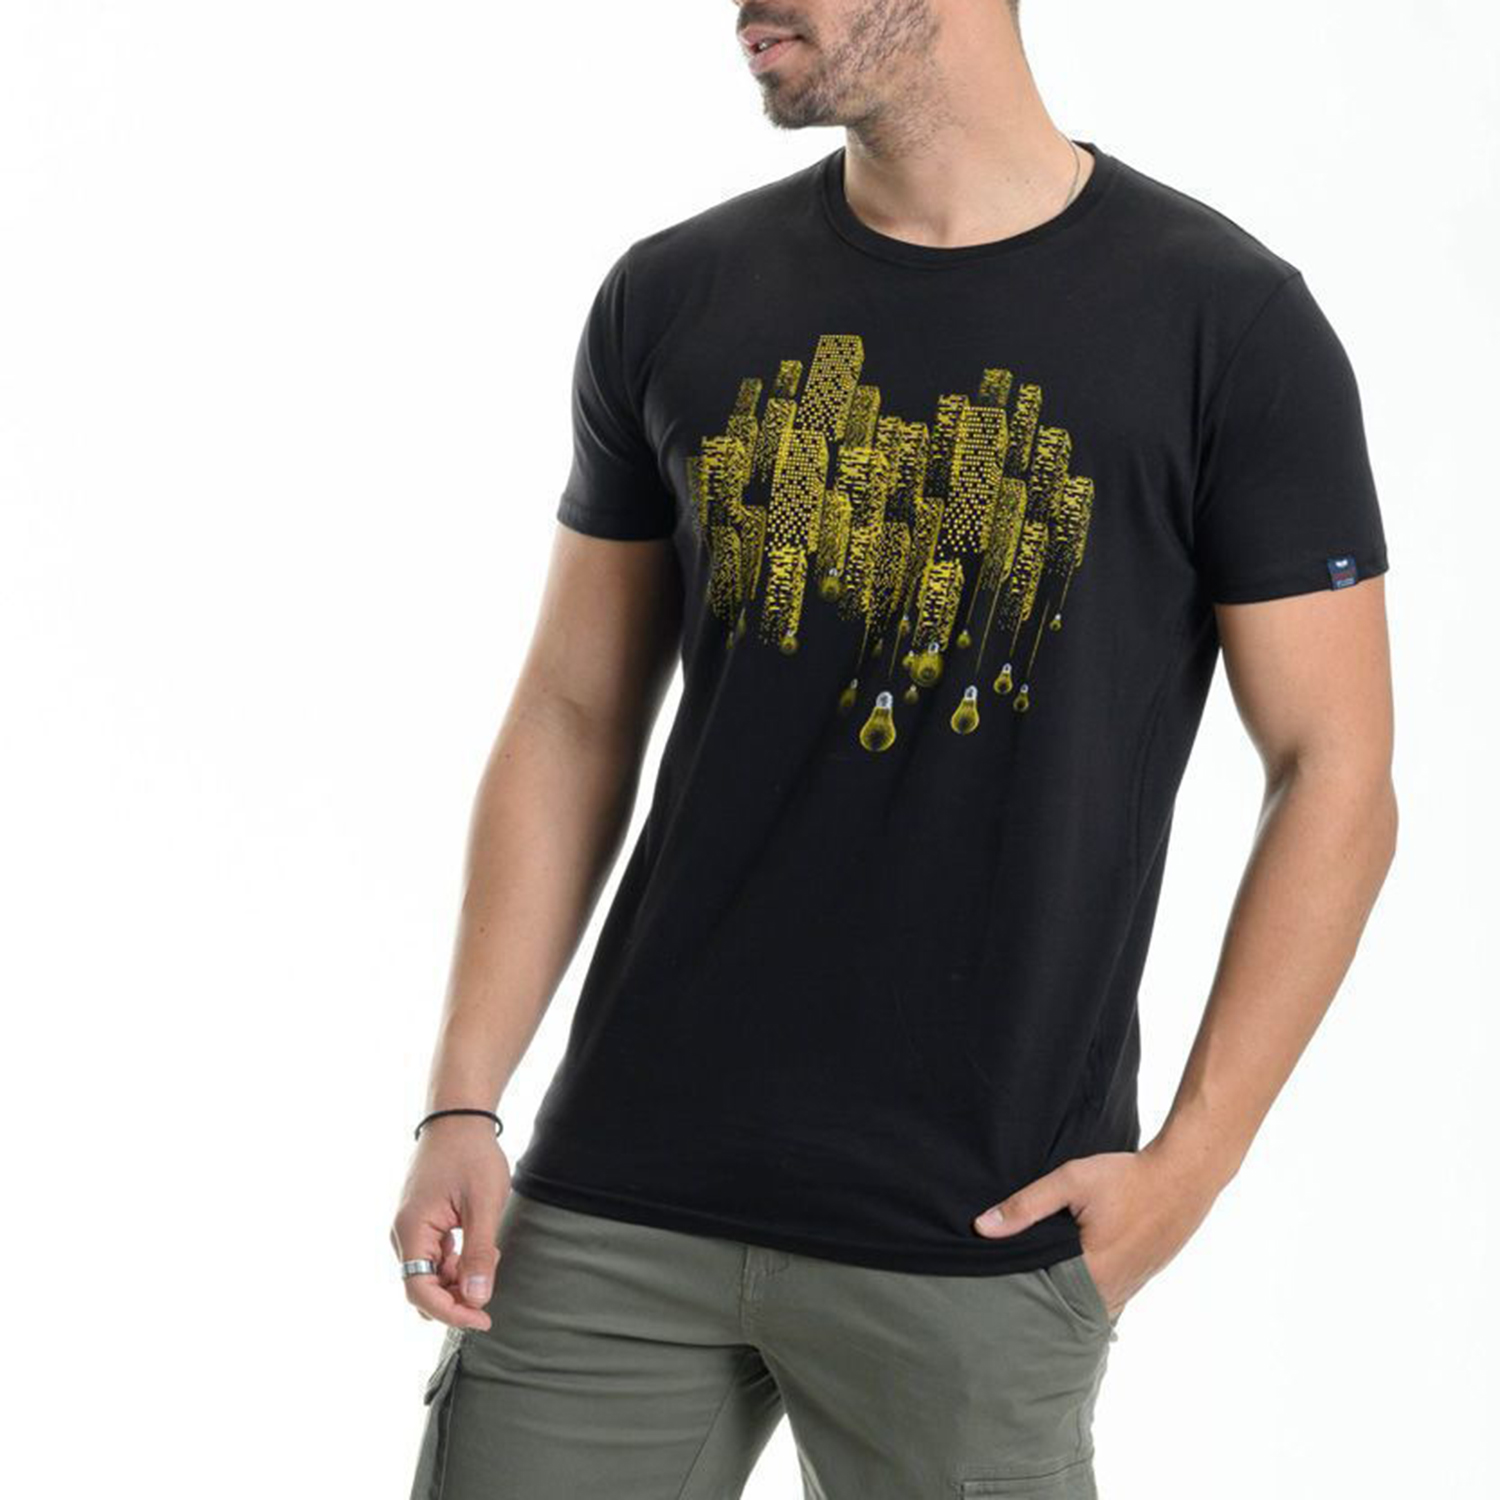 Ανδρικά/Ρούχα/Μπλούζες/Κοντομάνικες GREENWOOD - Ανδρικό t-shirt GREENWOOD μαύρο